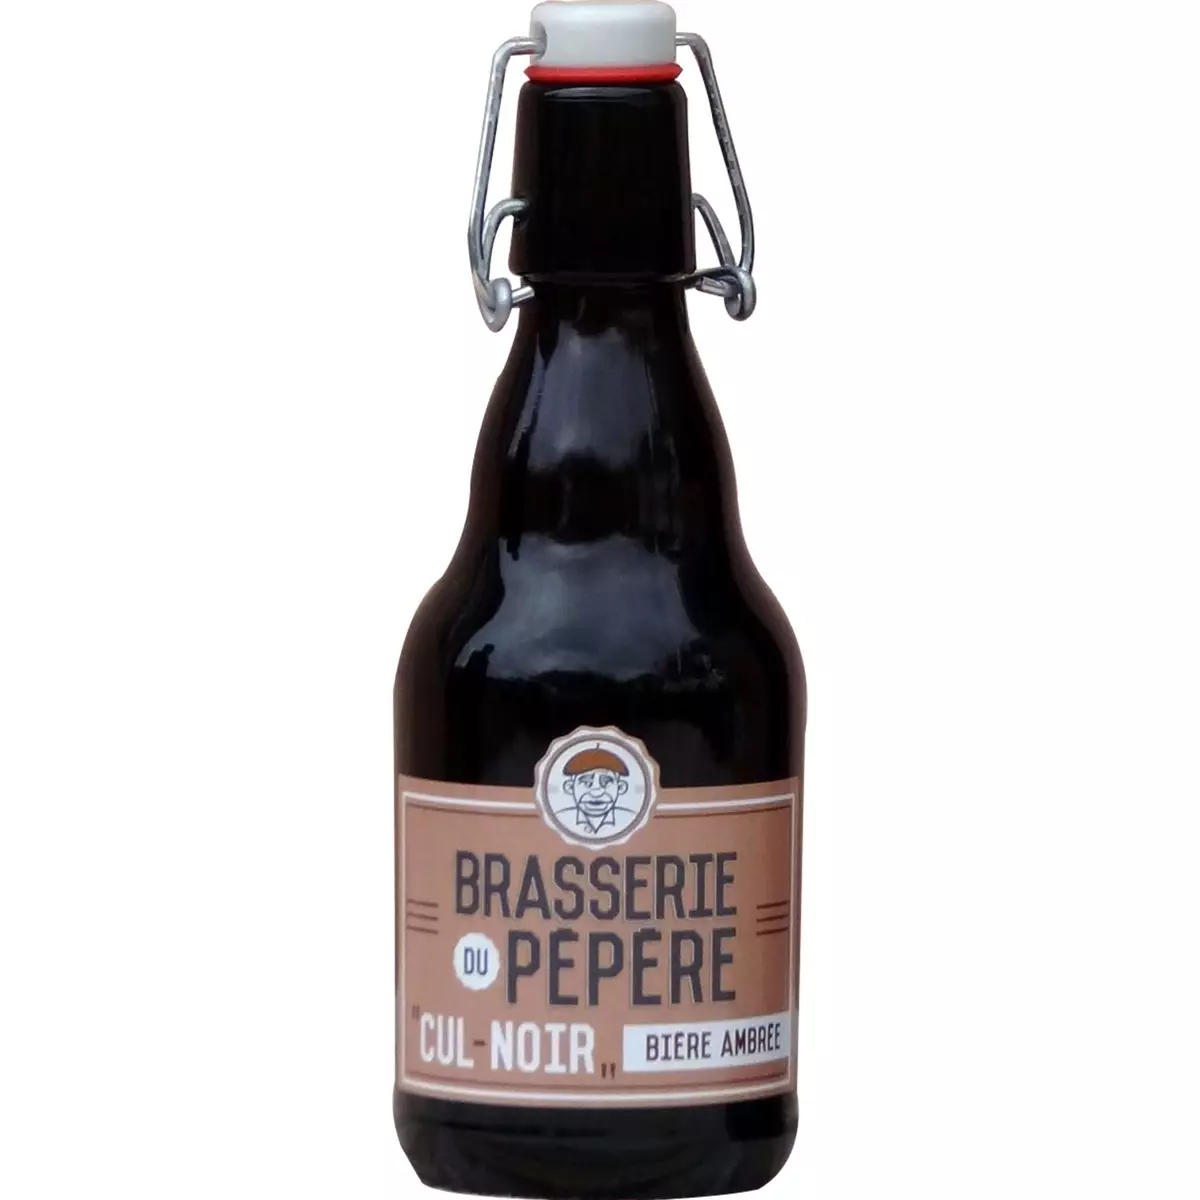 BRASSERIE DU PEPERE Bière ambrée Cul noir 6,5% bouteille 33cl